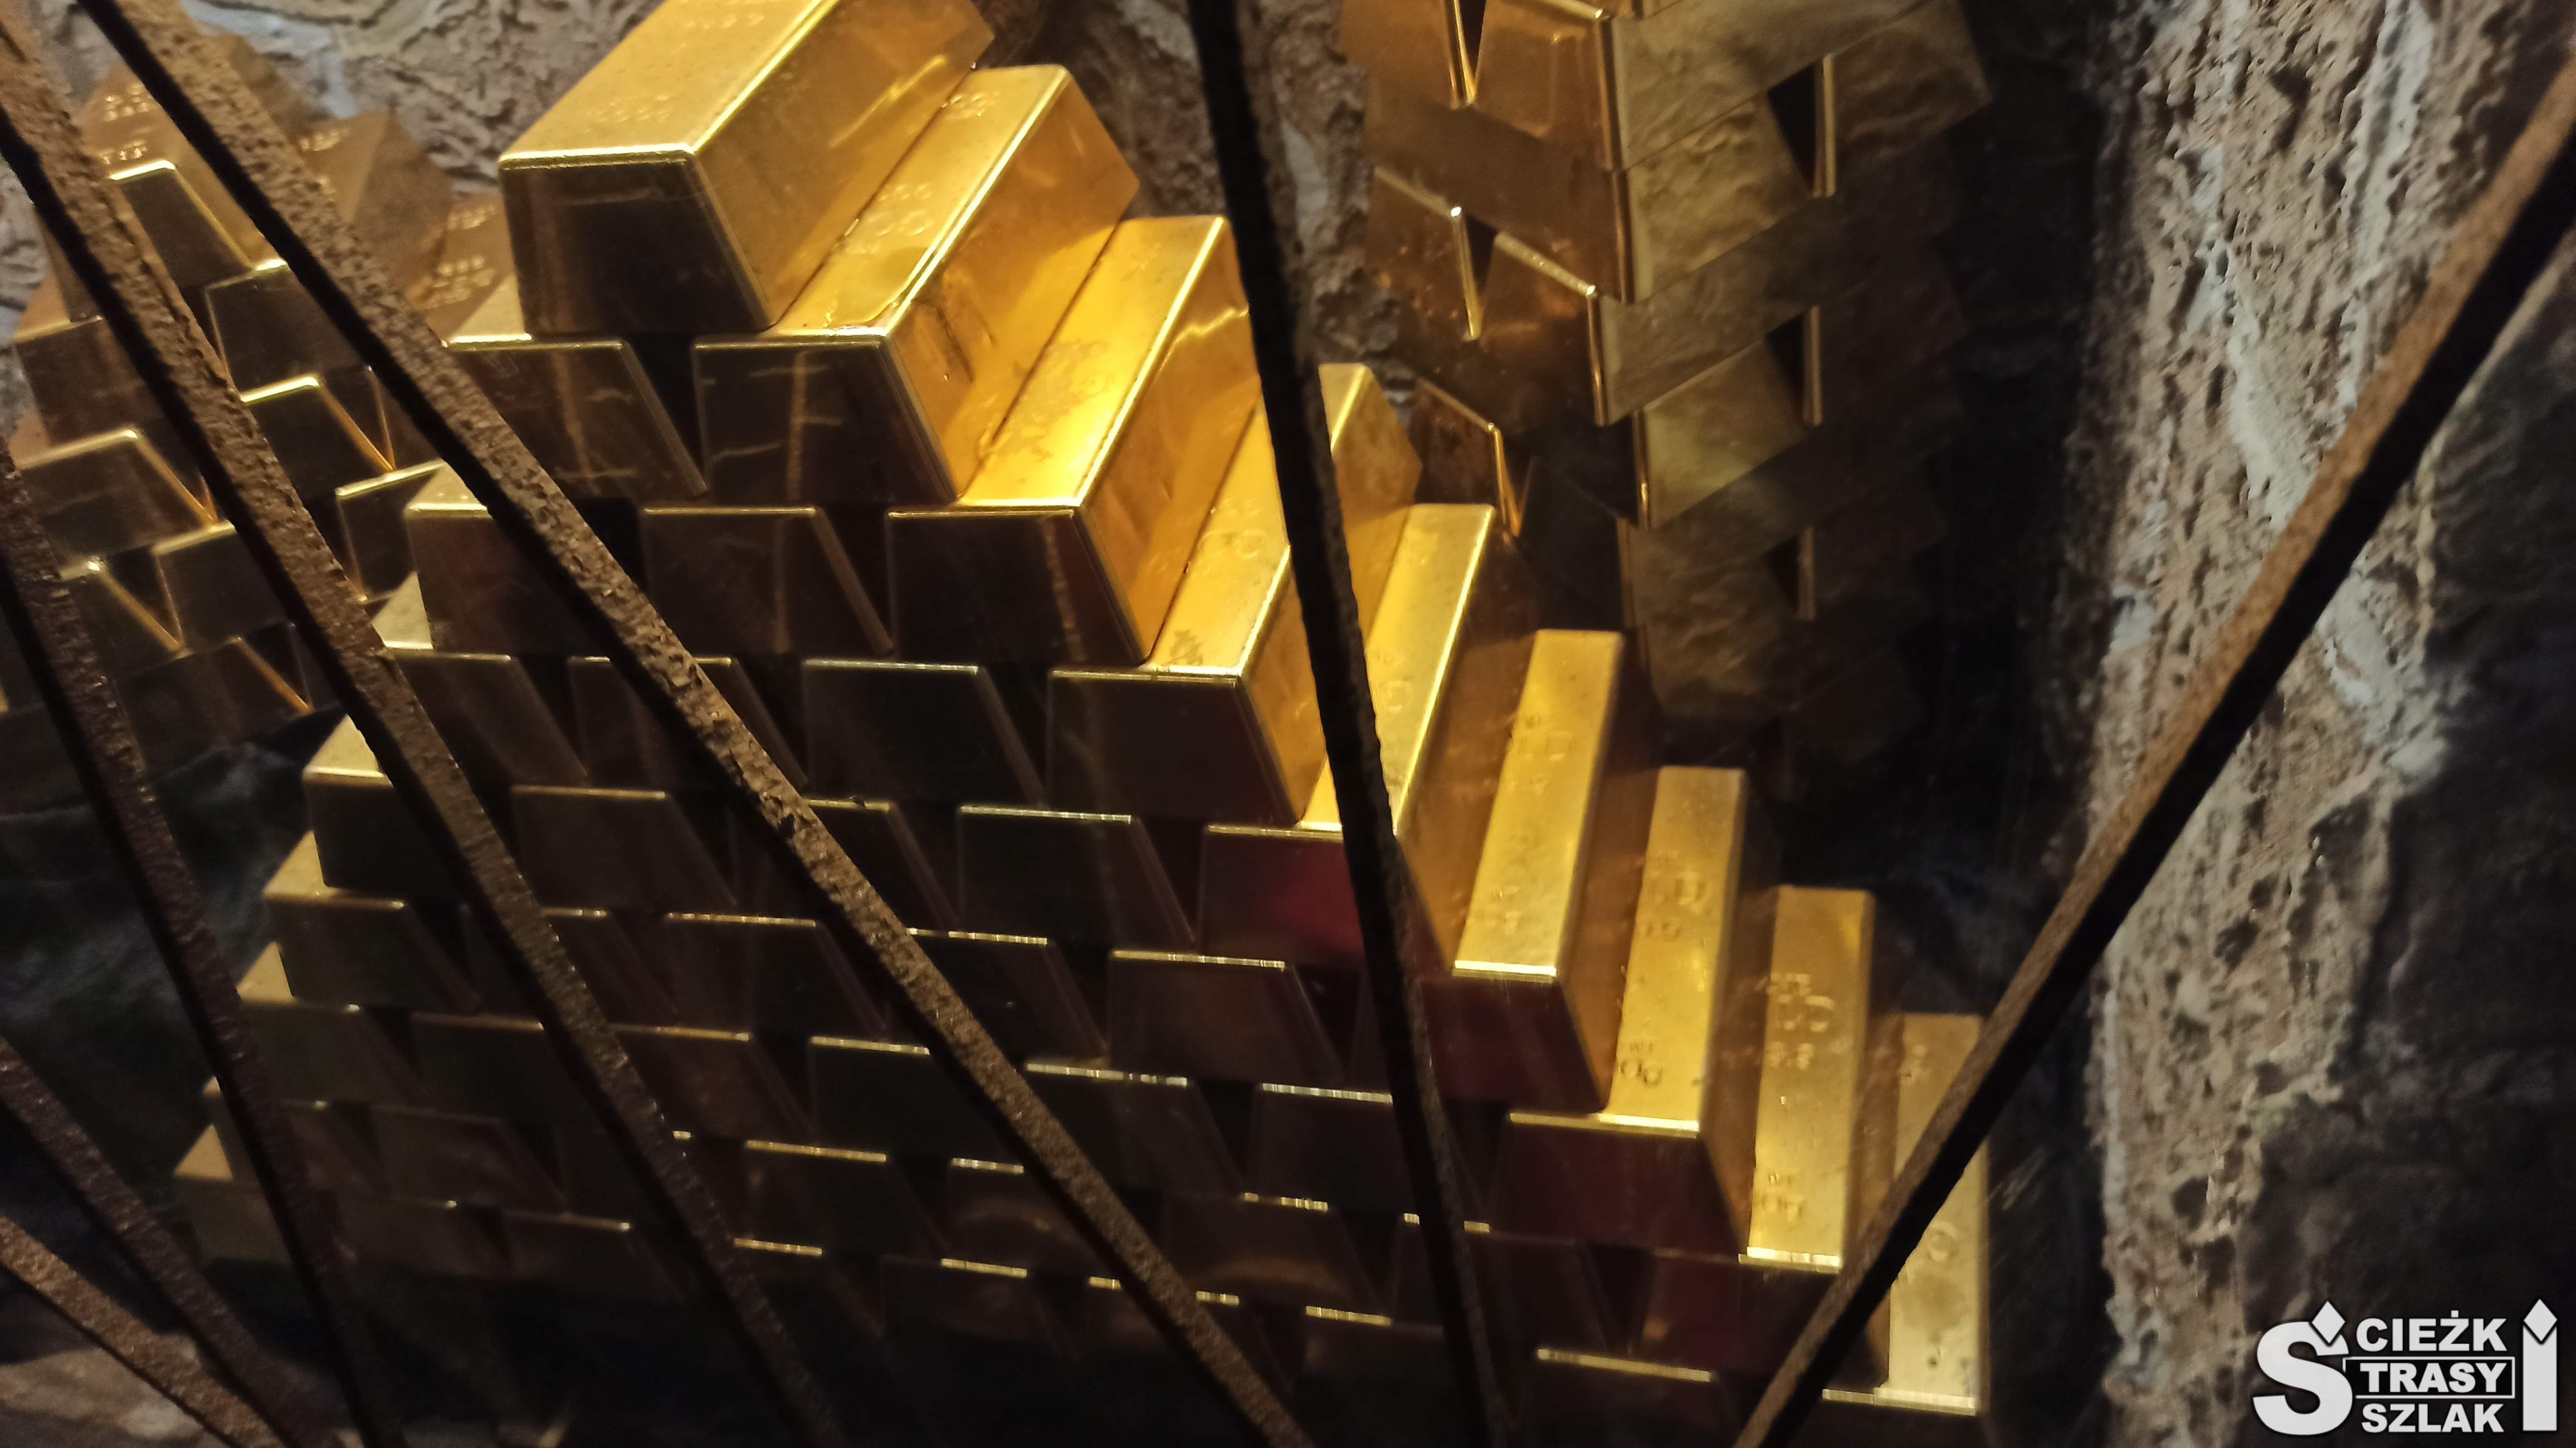 Piramida złota ułożona z wielu sztabek złota wydobytych w kopalni w Złotym Stoku